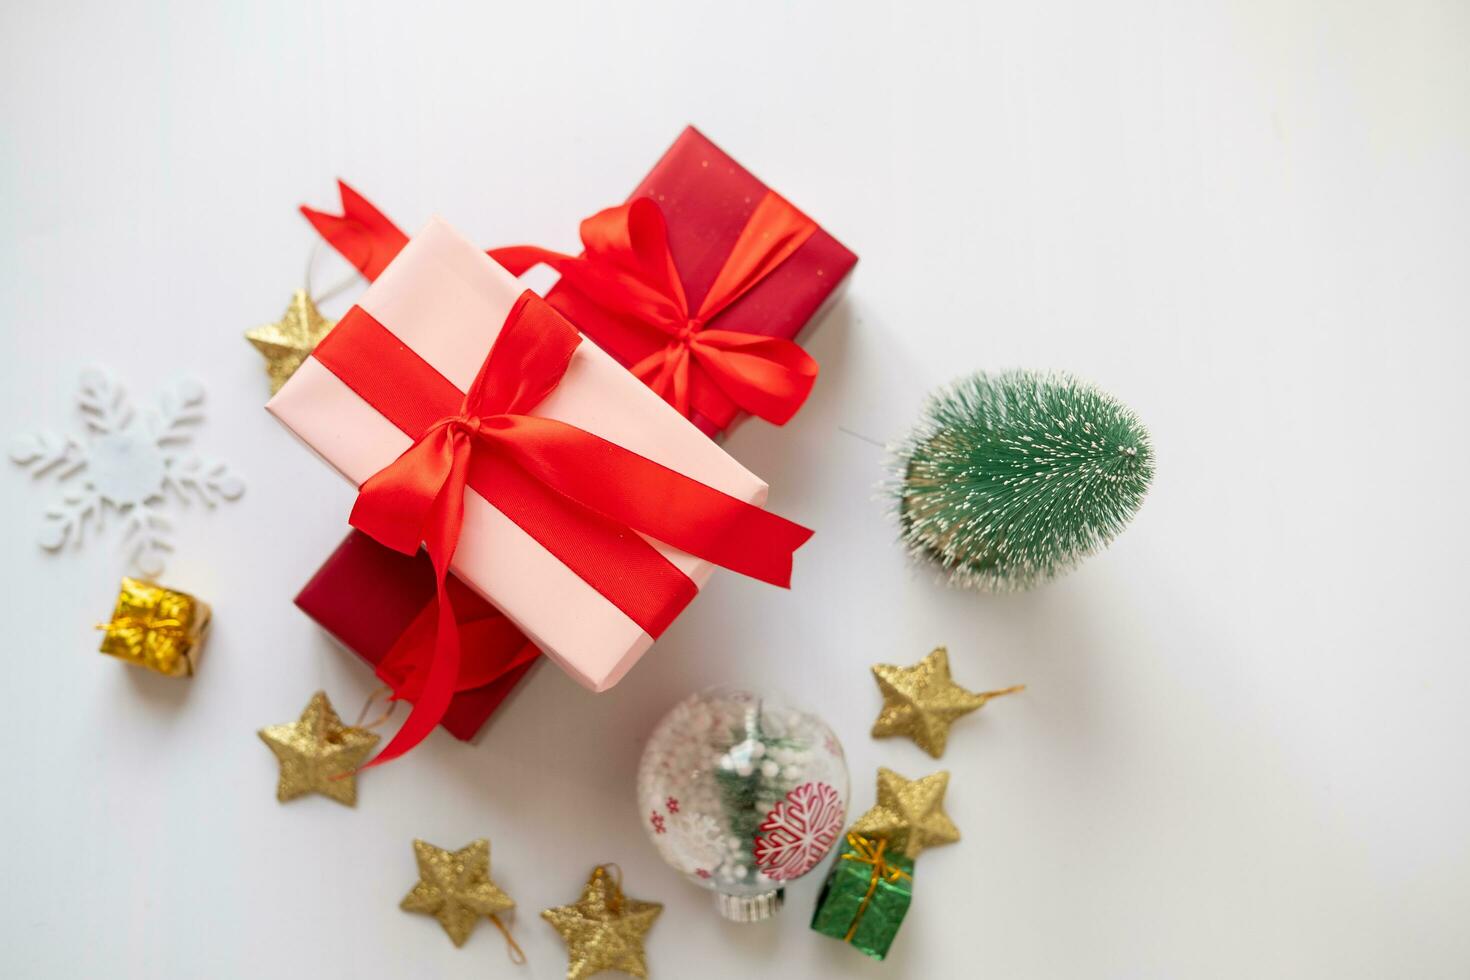 Navidad elementos, regalos, abeto sucursales, rojo decoraciones en blanco antecedentes. Navidad concepto, invierno, nuevo año foto